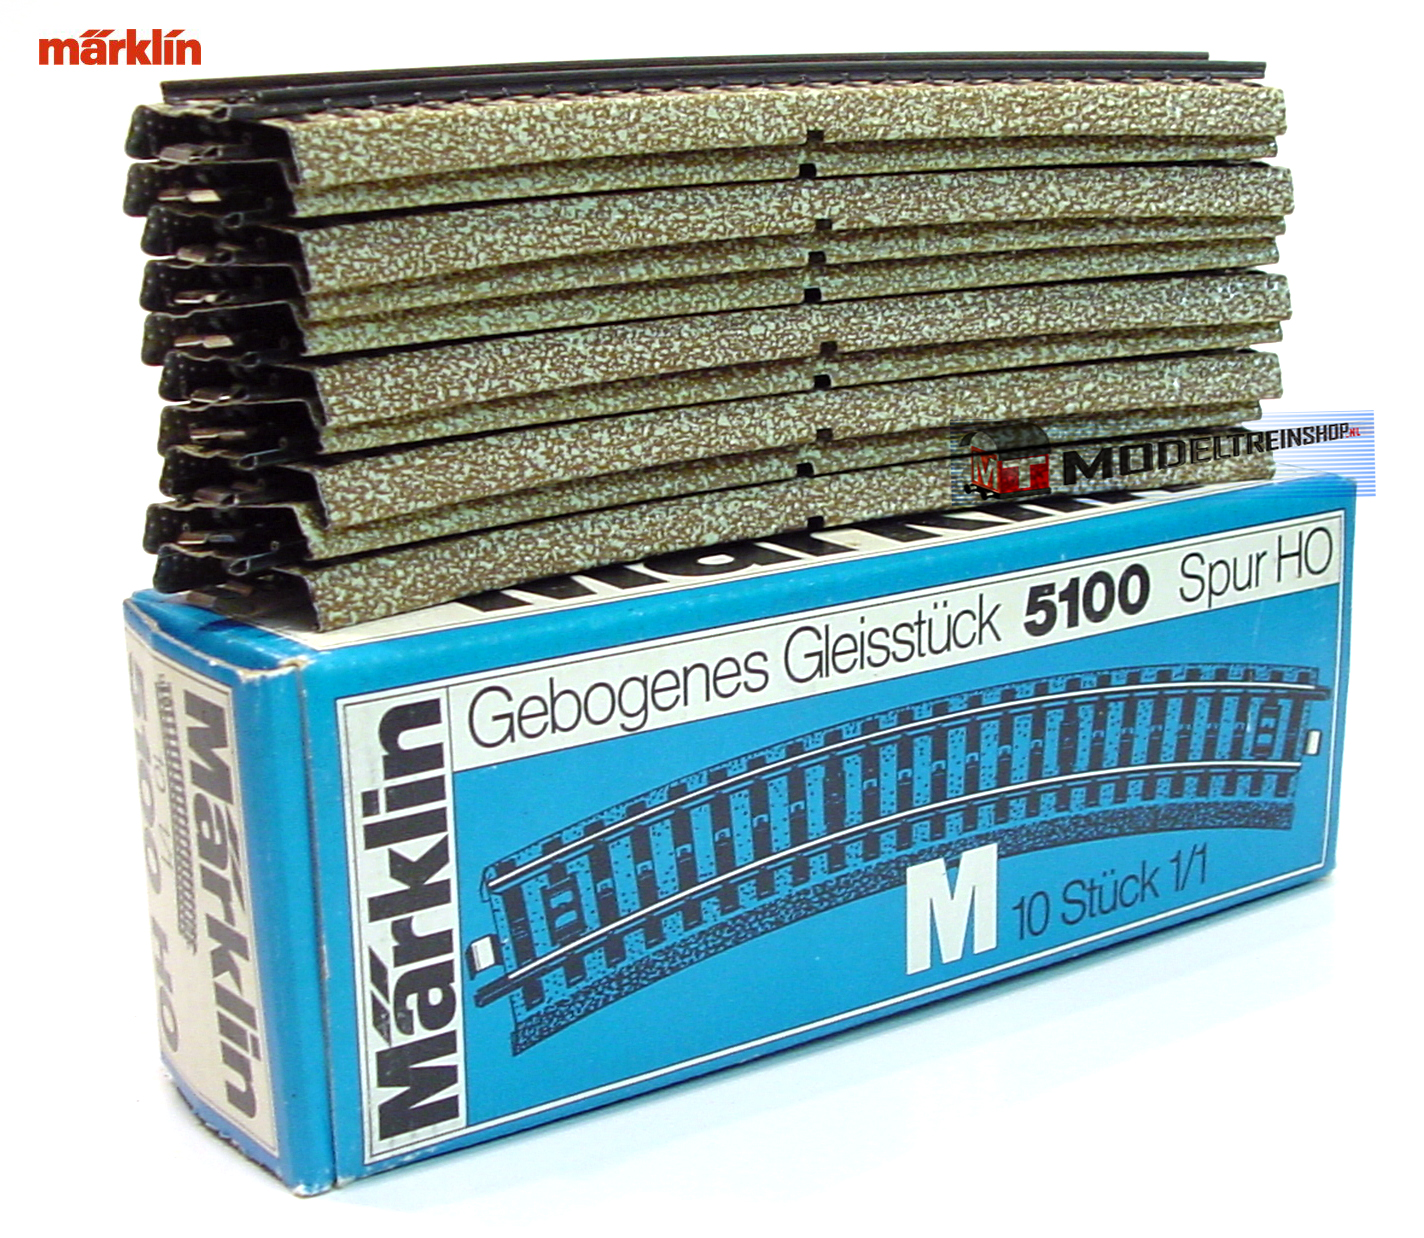 Marklin M Rail H0 5100 Gebogen 1/1 - 18,8 cm 10 stuks in OVP - Modeltreinshop